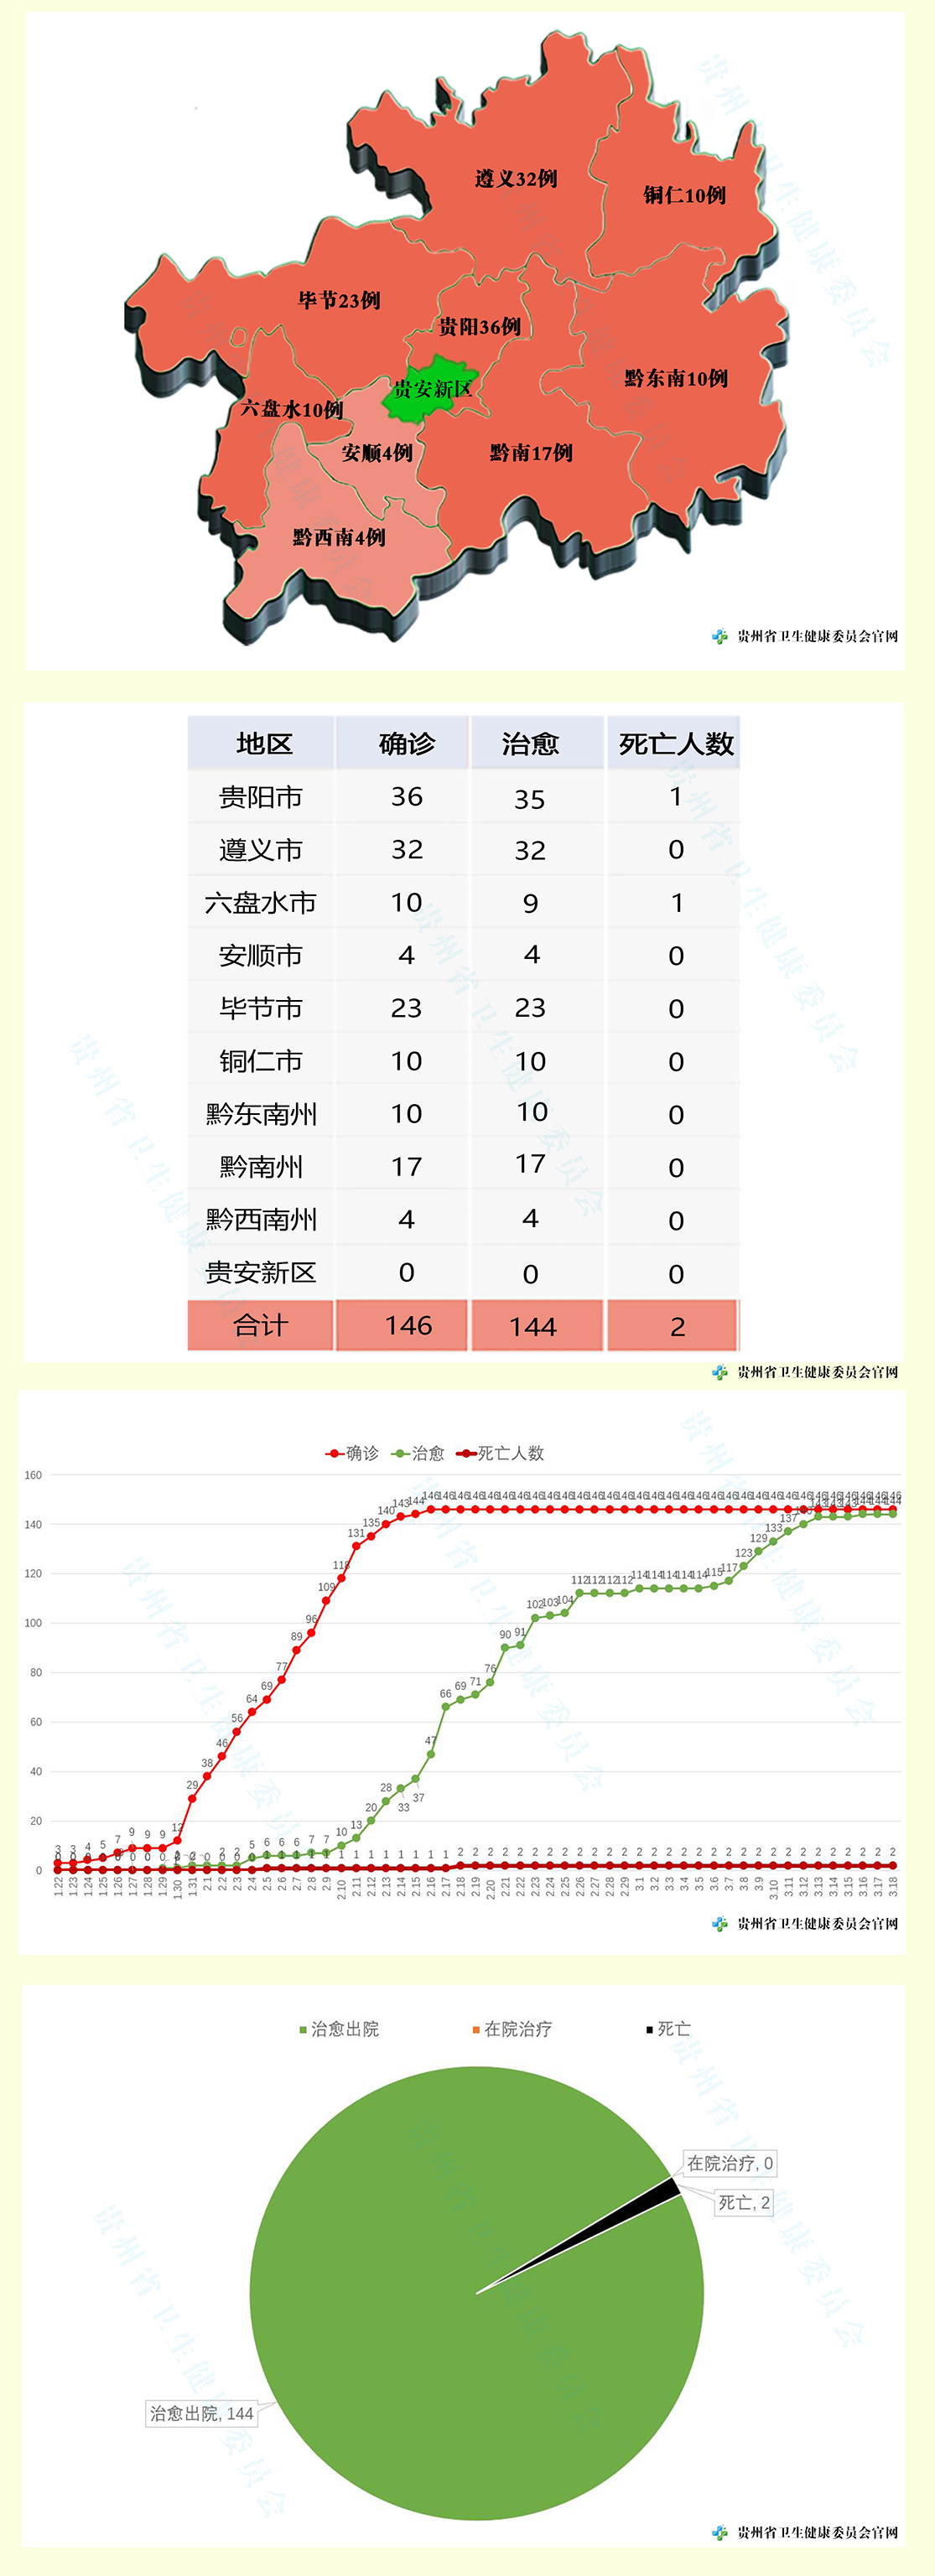 贵州无新增确诊 累计146例尚在接受医学观察13人